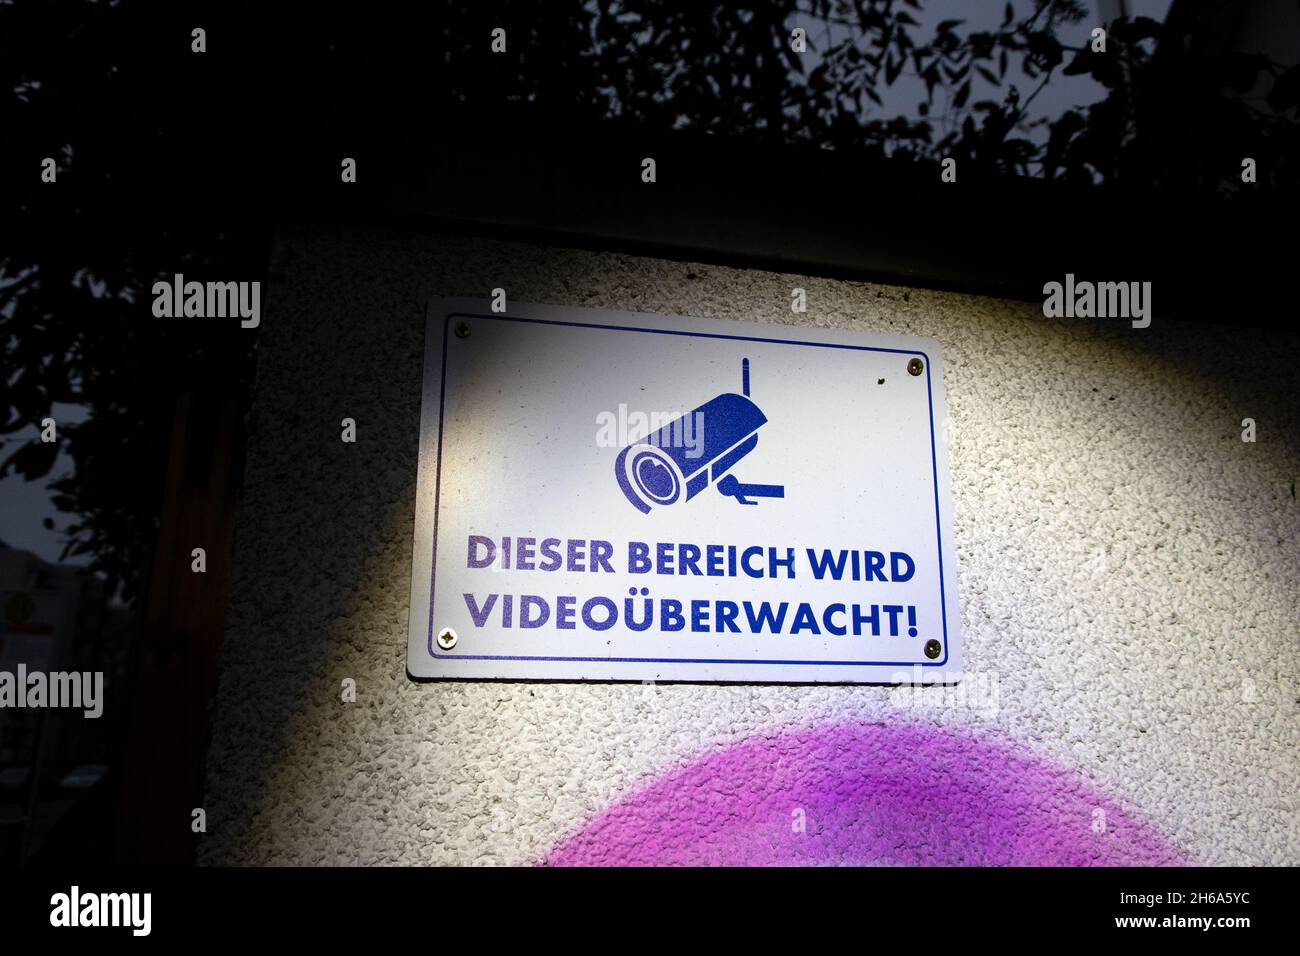 Ein Schild zur Information über die Installation eine Videoüberwachung. Schutz vor Einbrechern. Stock Photo